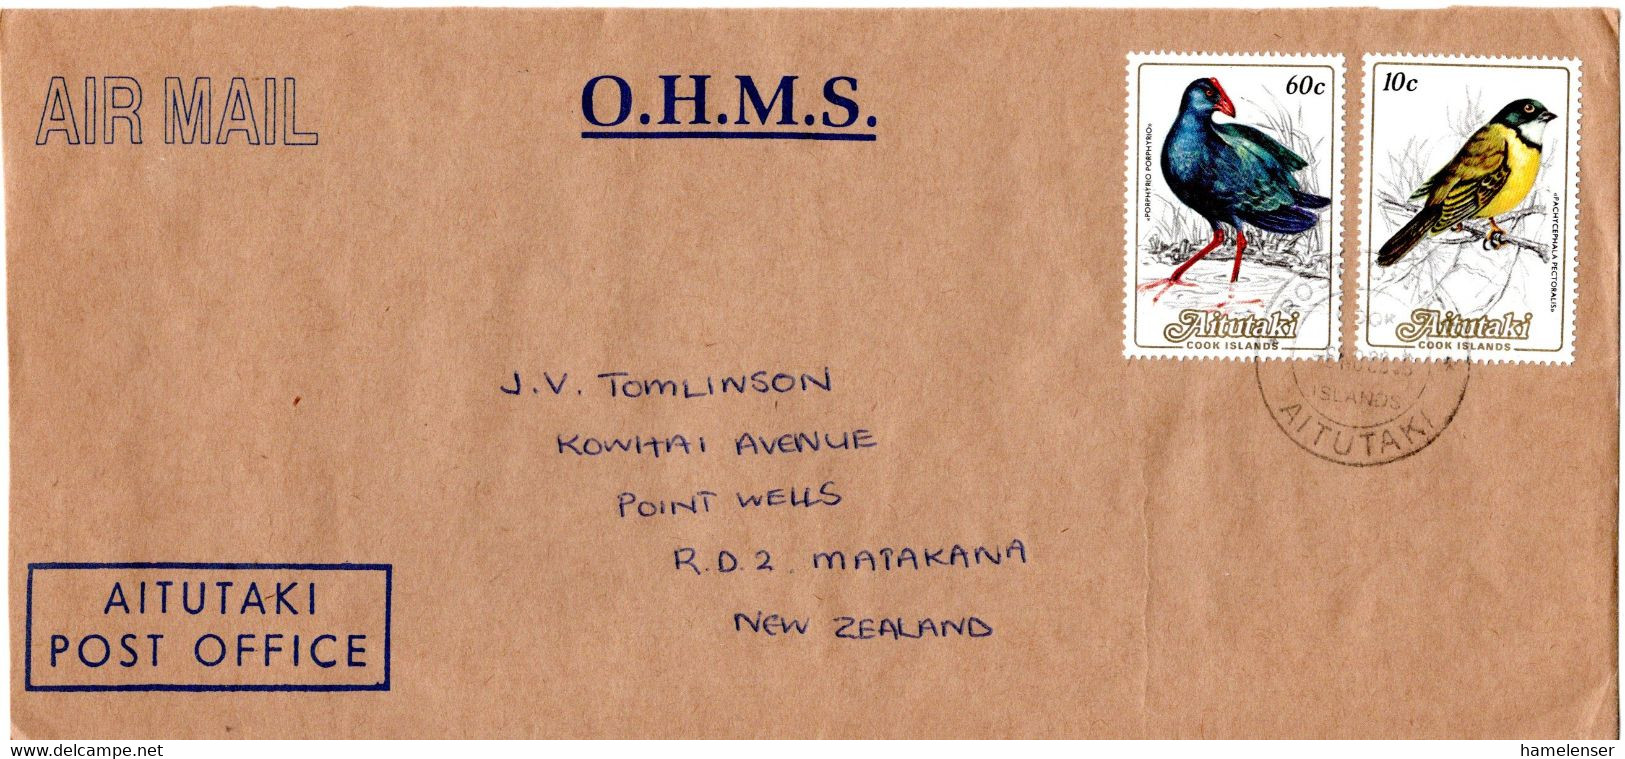 L34007 - Aitutaki - 1998 - 60c. Ralle MiF A. OHMS LpBf. RAROTONGA -> Neuseeland - Kraanvogels En Kraanvogelachtigen